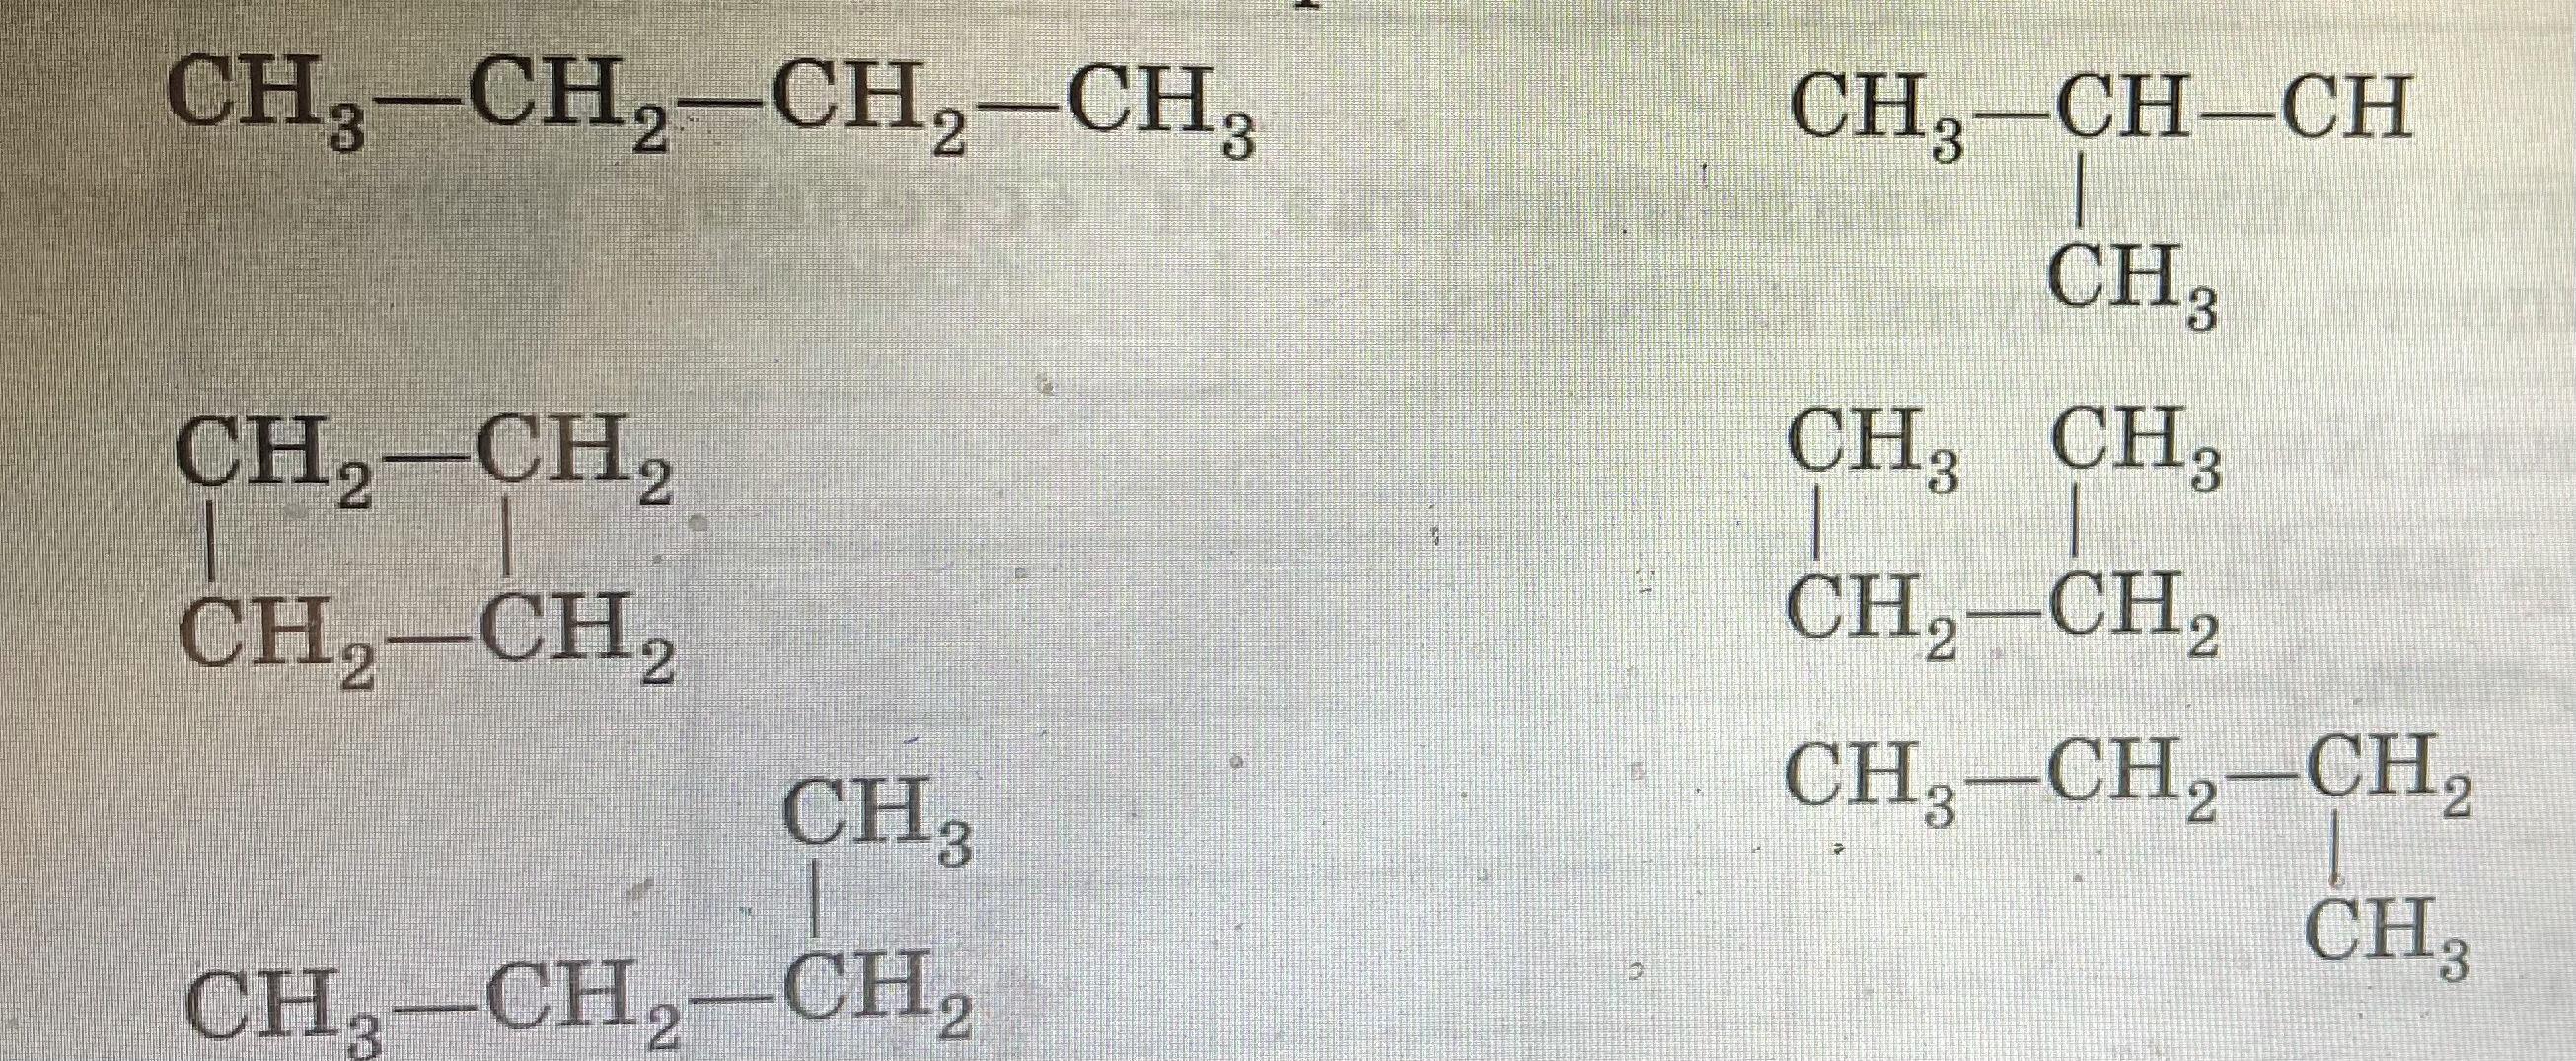 Структурные формулы изомеров пентана. Изомеры органика. Как давать названия изомерам. Дайте название веществам и укажите какие из них являются изомерами.